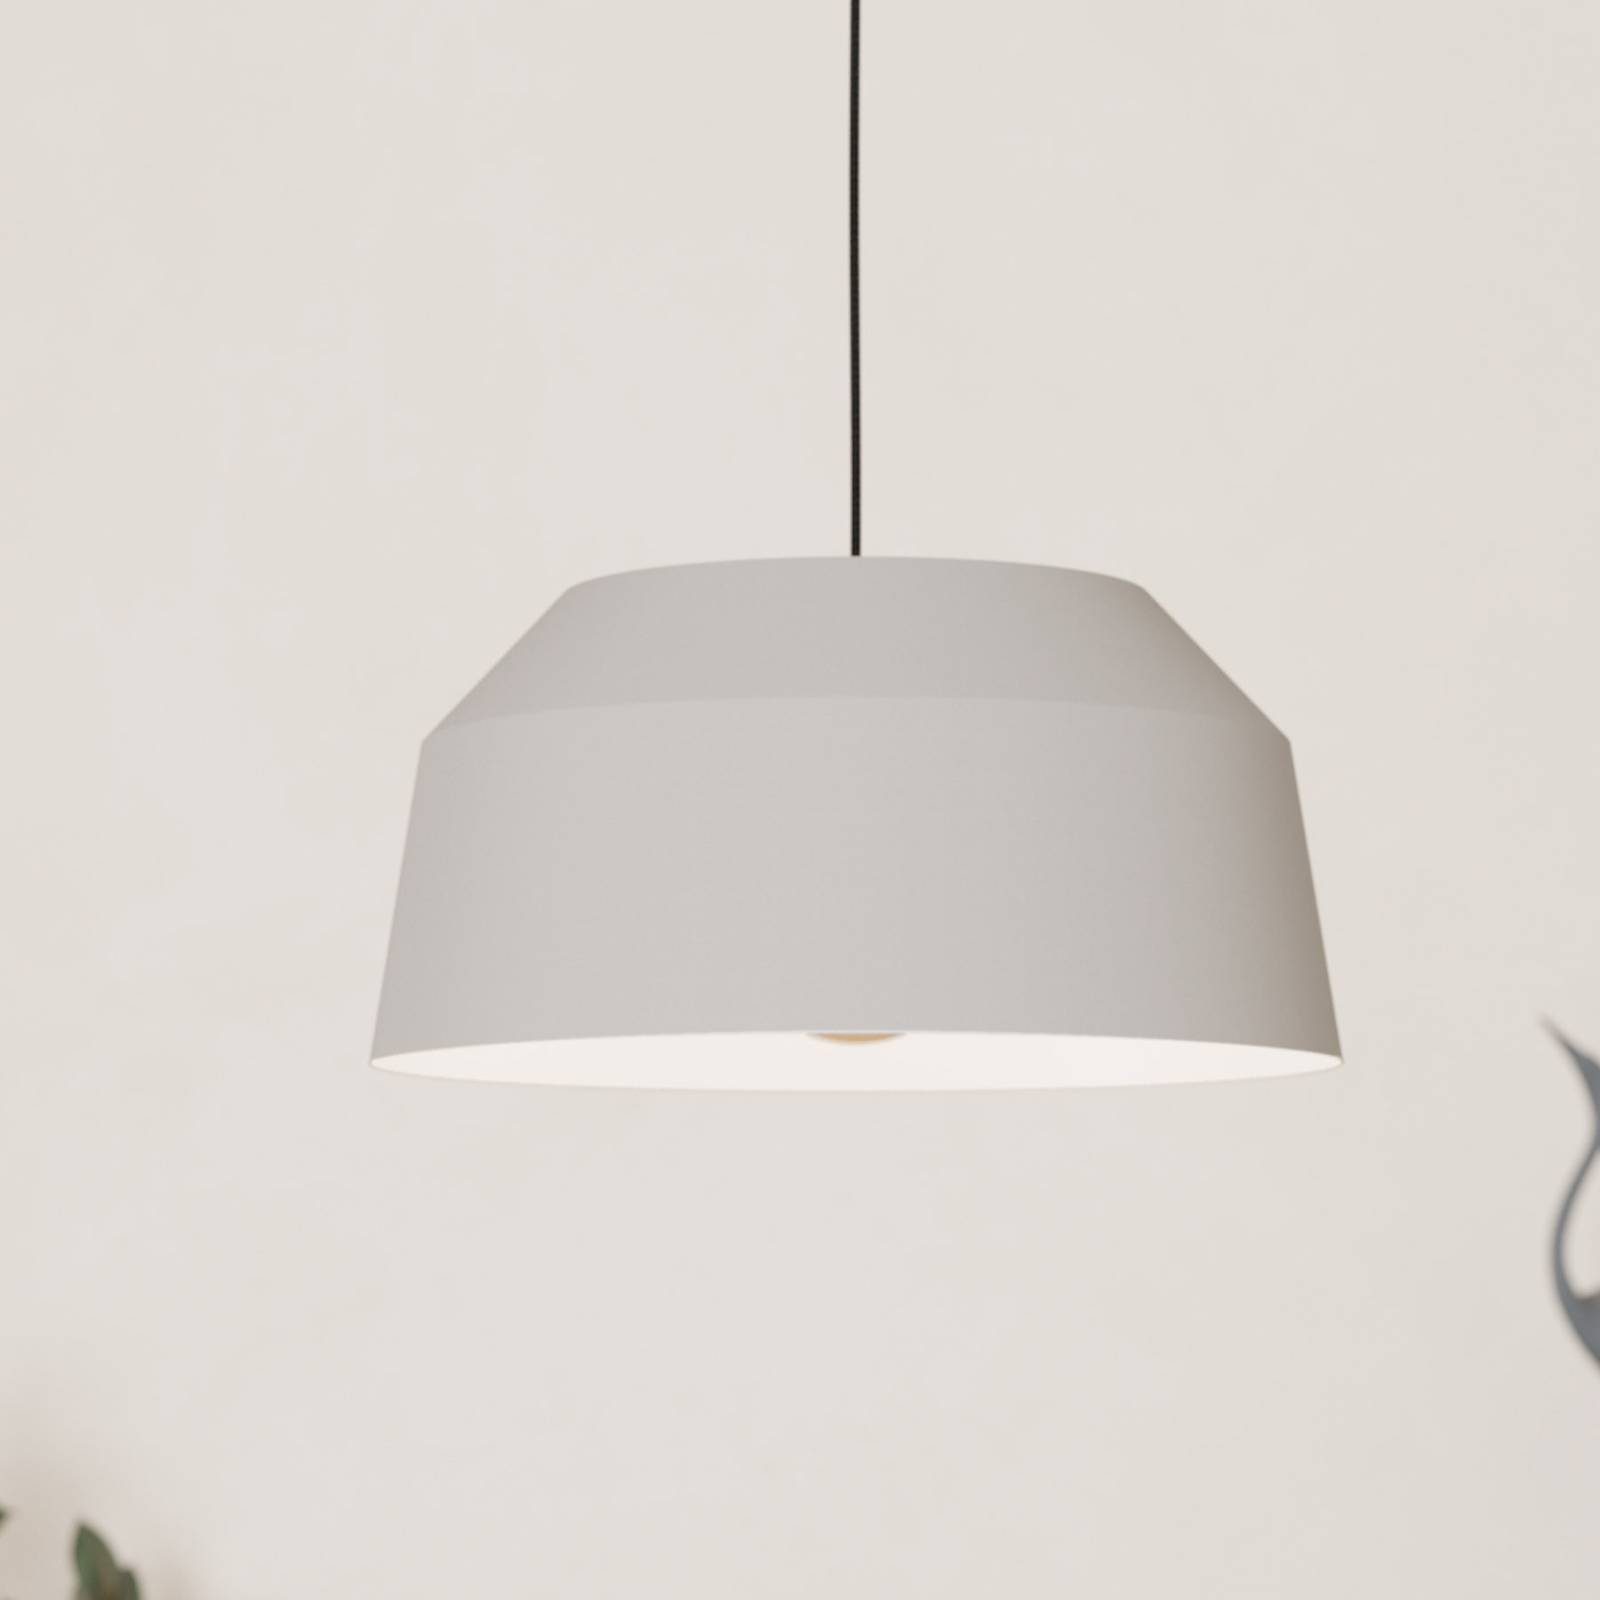 EGLO Závěsné svítidlo Contrisa v šedé barvě, jedno světlo, Ø 38 cm